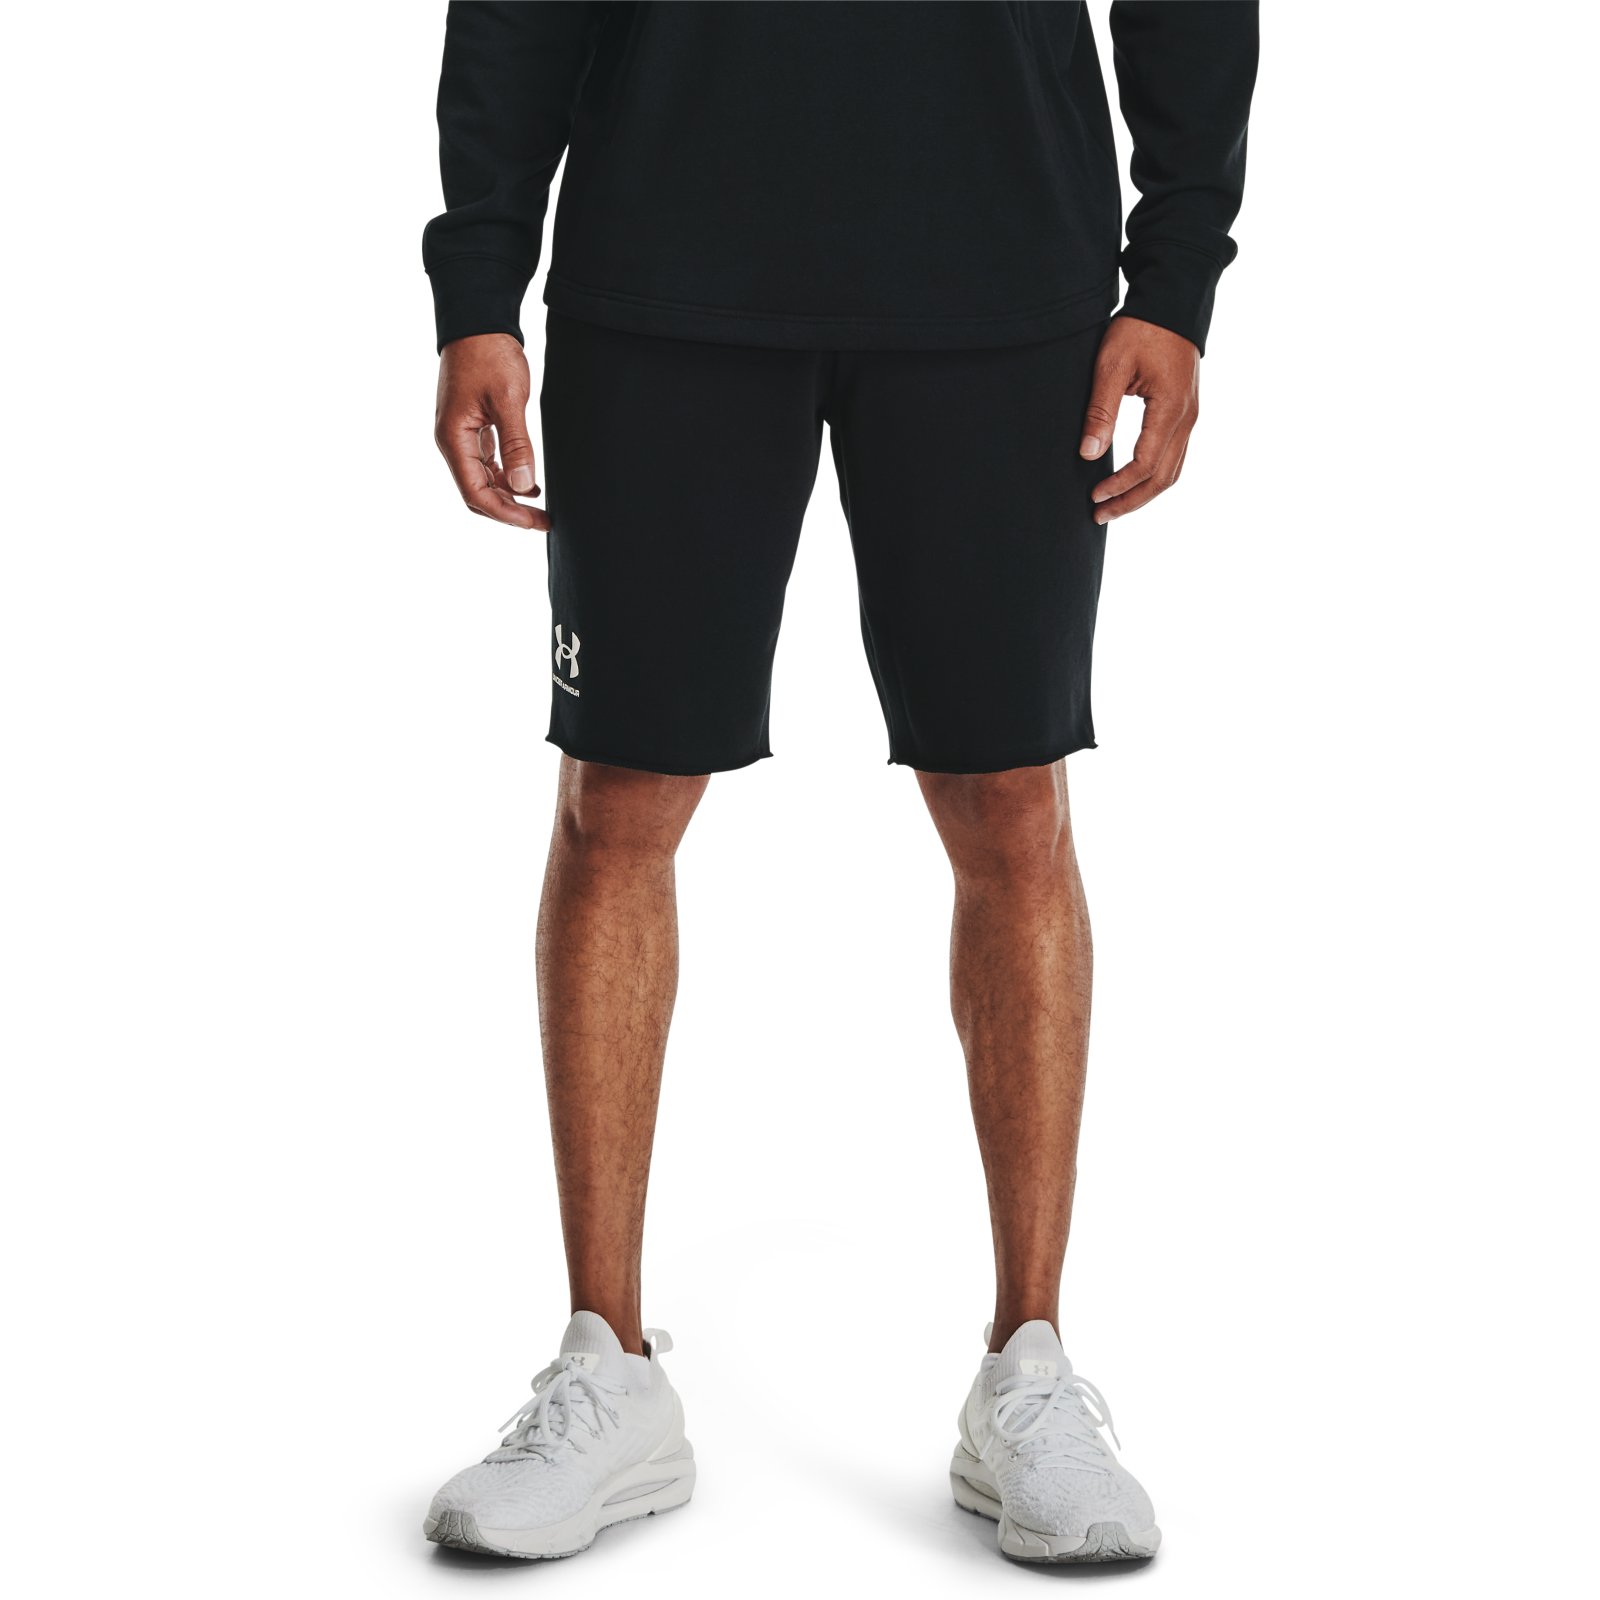 фото Спортивные шорты мужские under armour 1361631-001 черные s/m